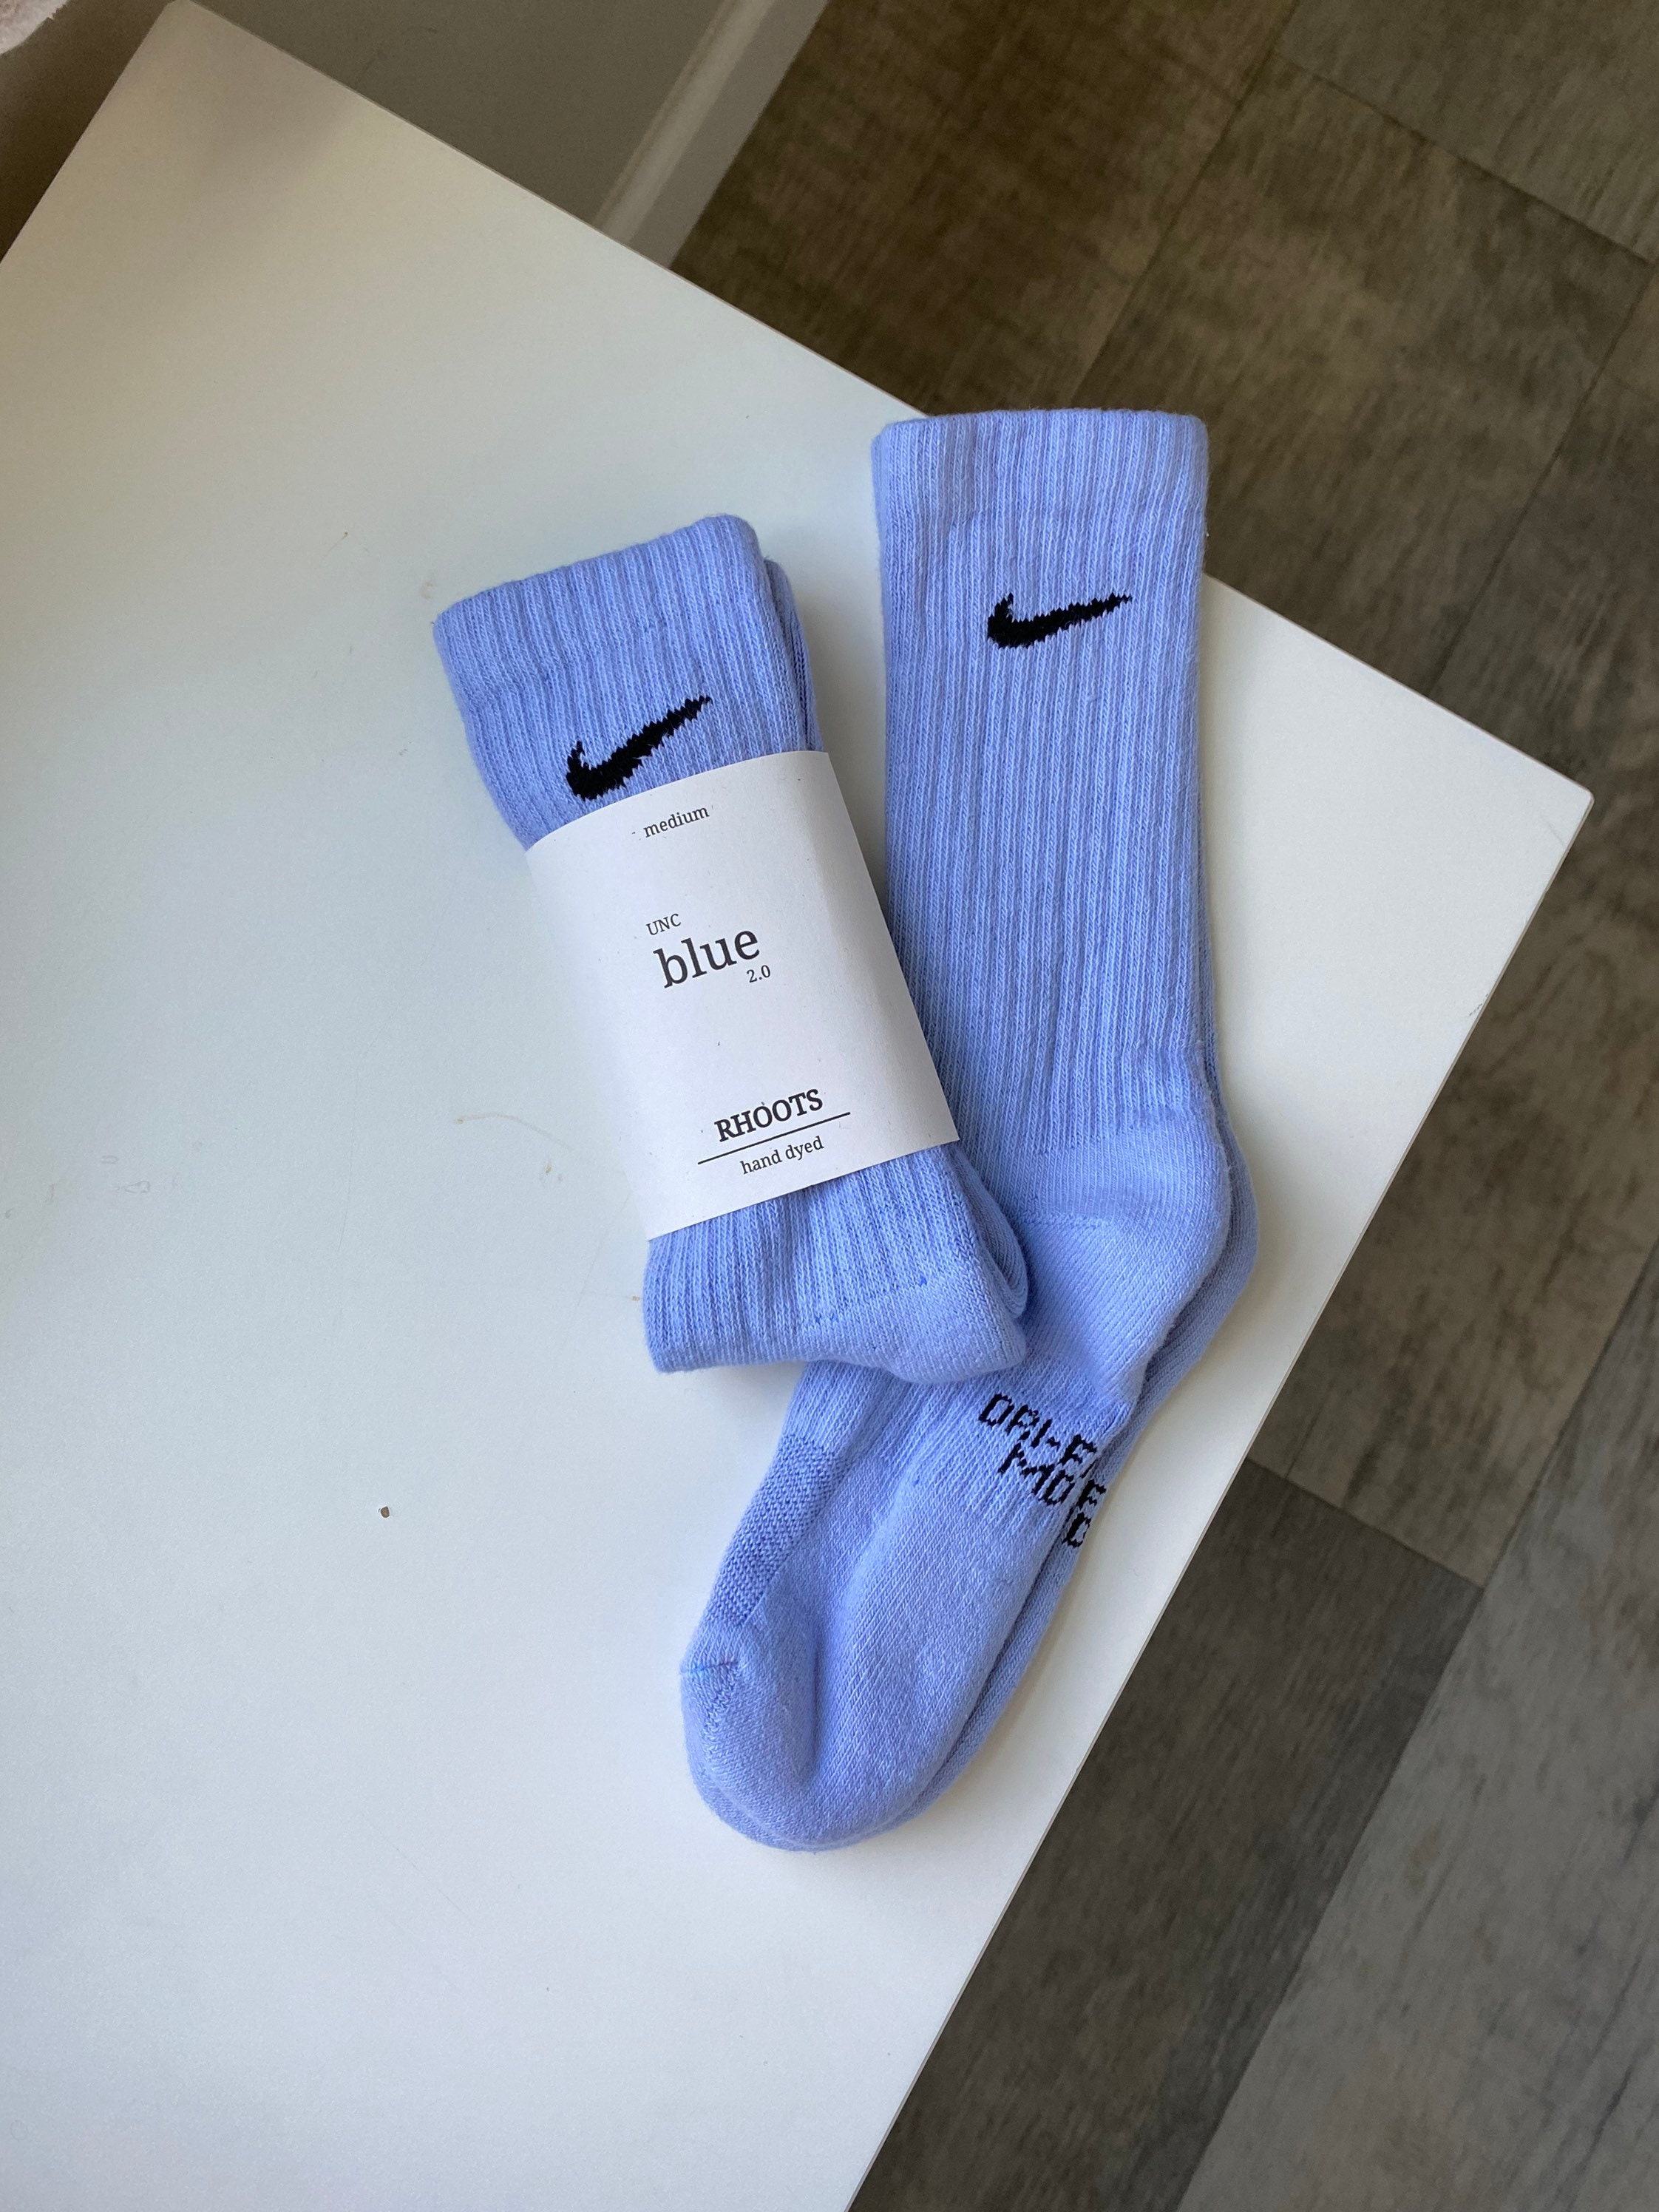 Nike Hand Tie-dye Crew Socks by RHOOTS - Etsy